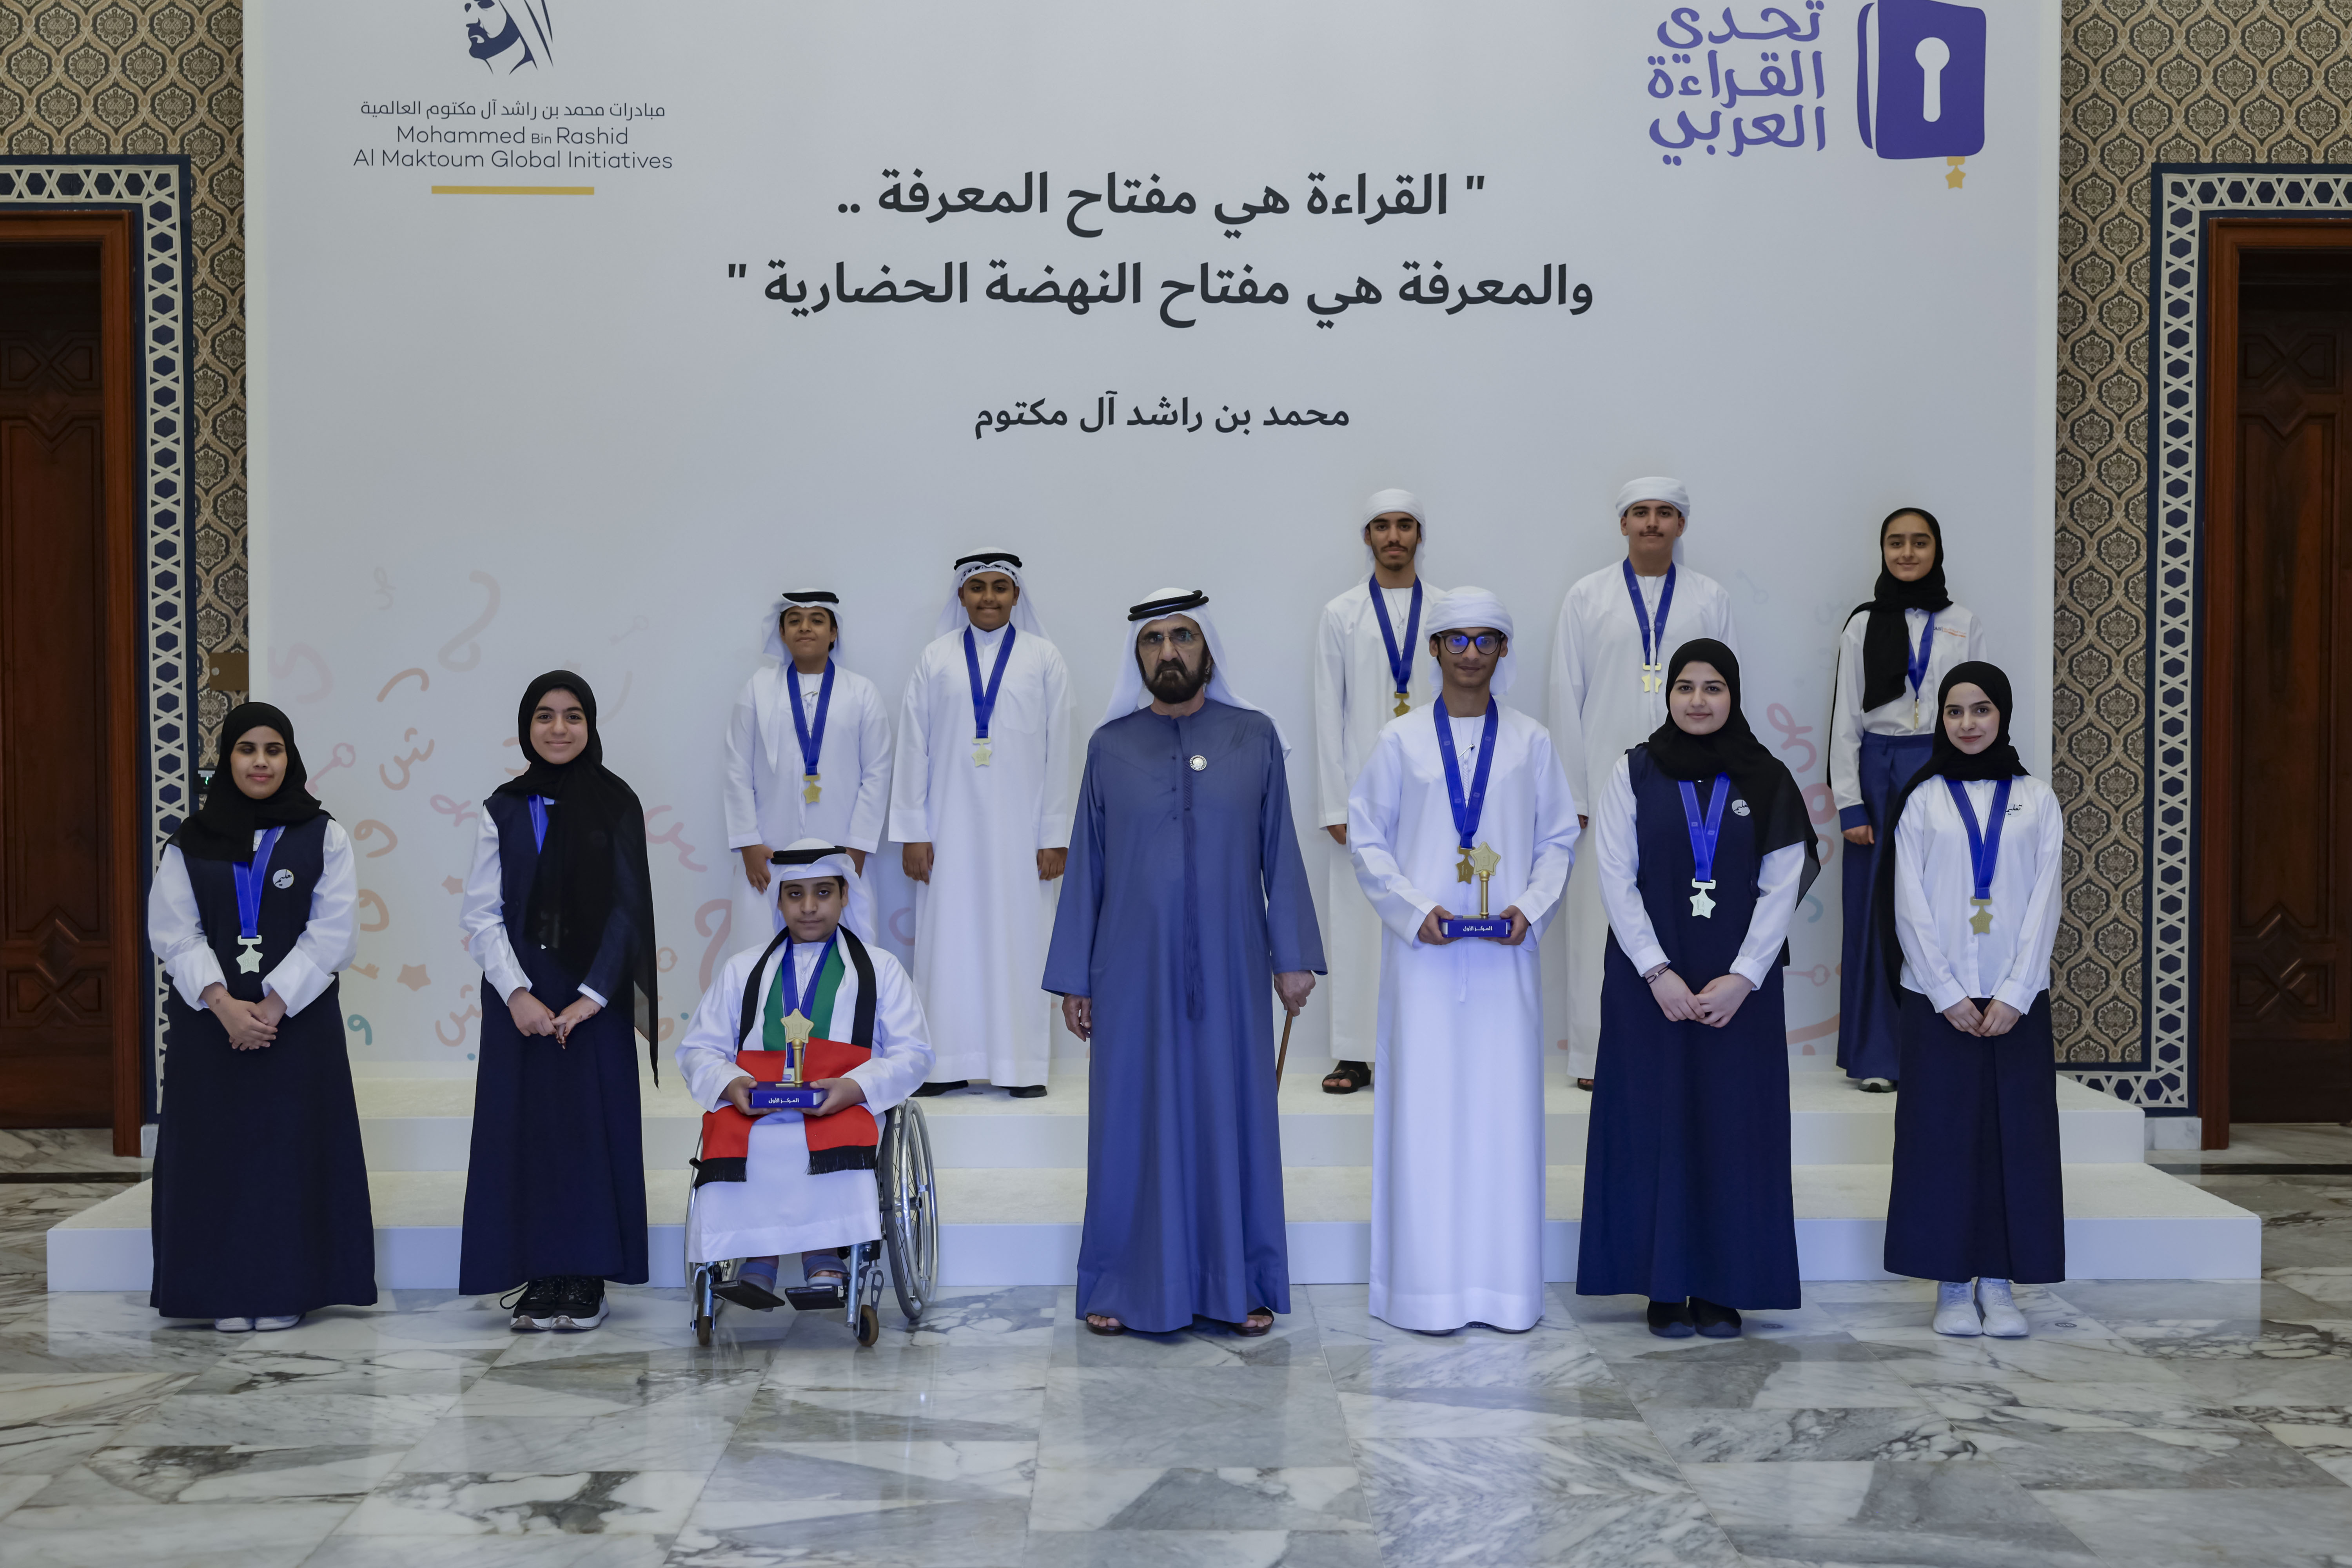  صاحب السمو الشيخ محمد بن راشد آل مكتوم - محمد بن راشد يلتقي أبطال تحدي القراءة العربي على مستوى دولة الإمارات